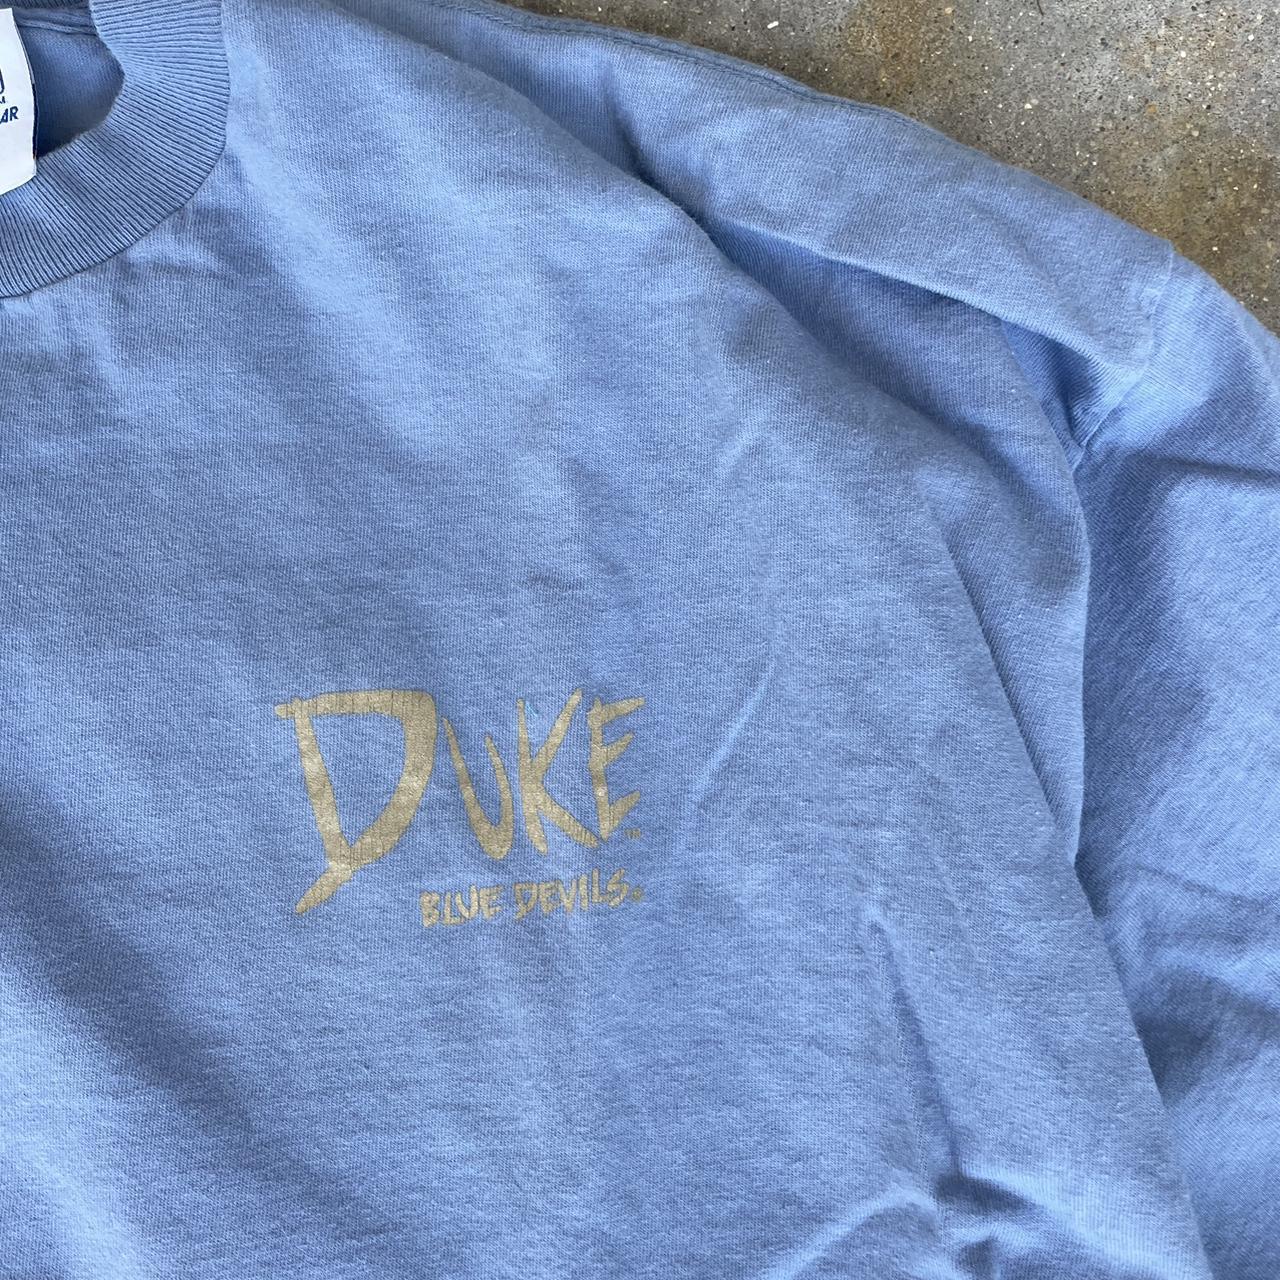 Duke Men's Blue and Tan T-shirt (4)